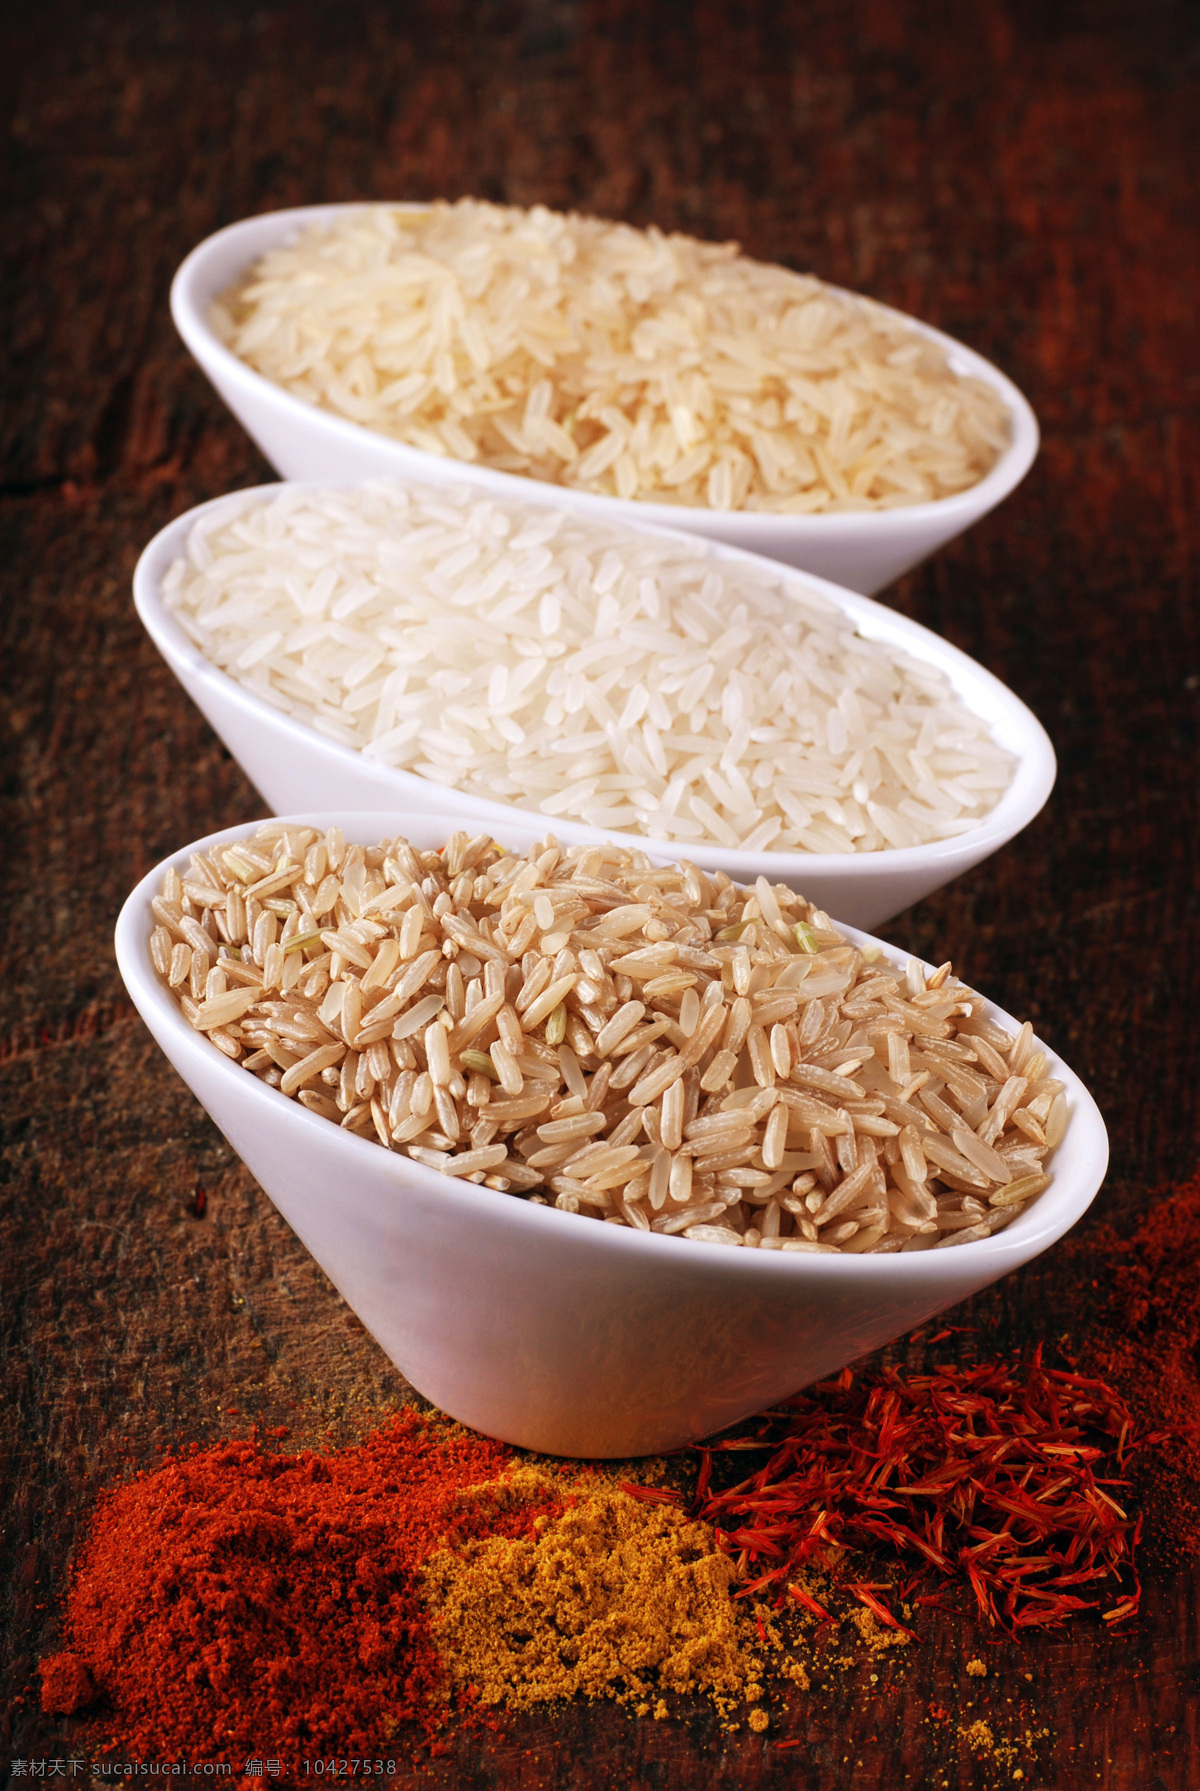 各色大米 大米 高清大米 各种大米 三碗大米 粮油 餐饮美食 食物原料